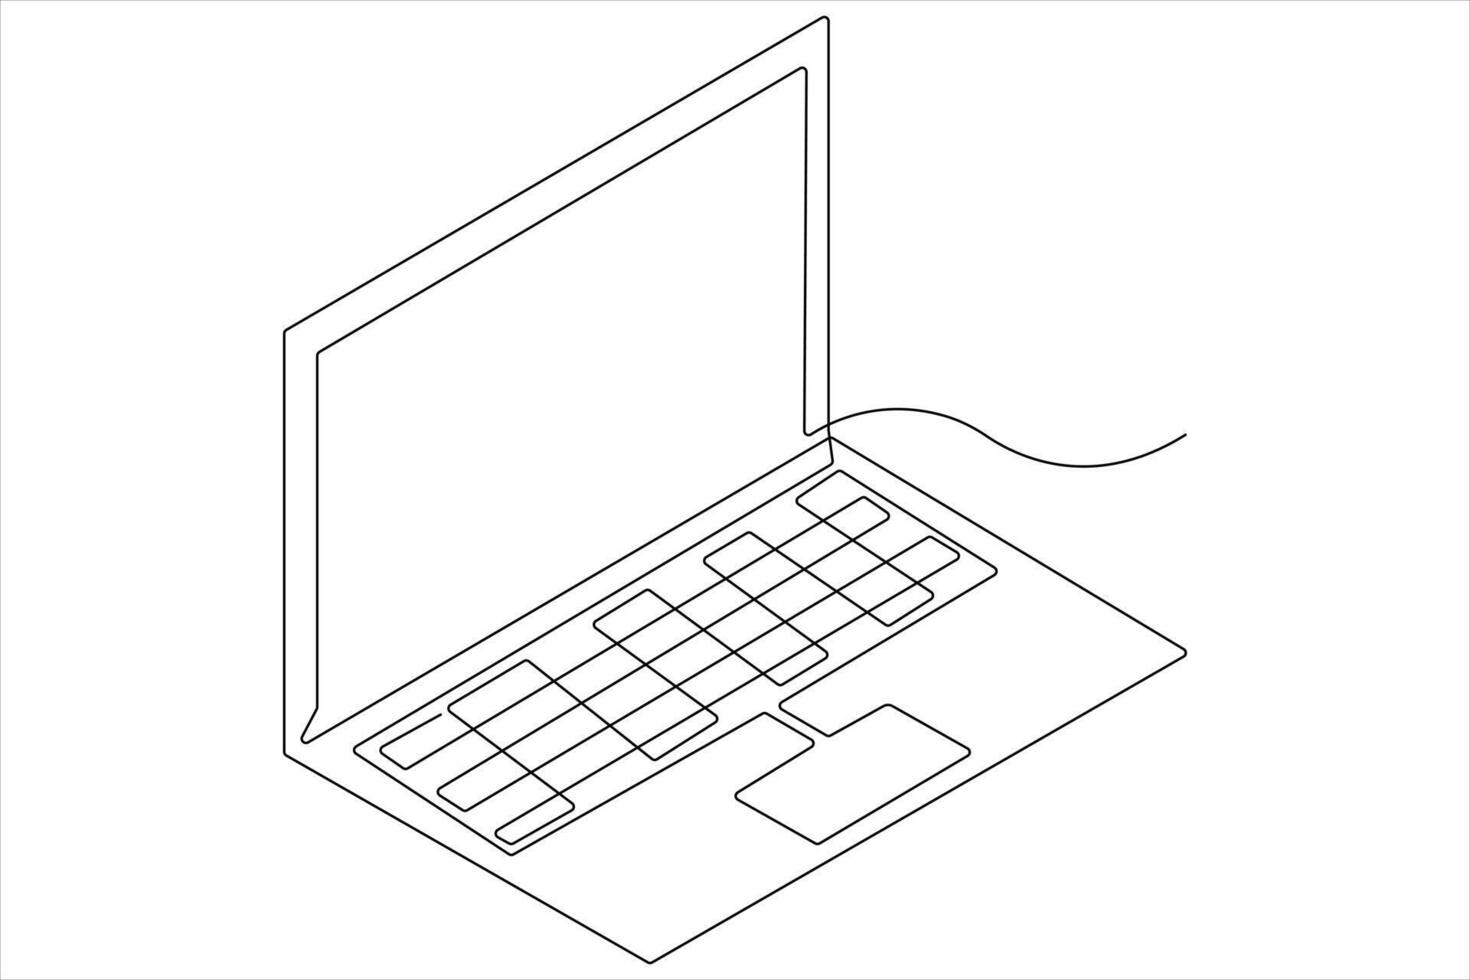 kunst illustratie van laptop in een lijn stijl geïsoleerd schets vector